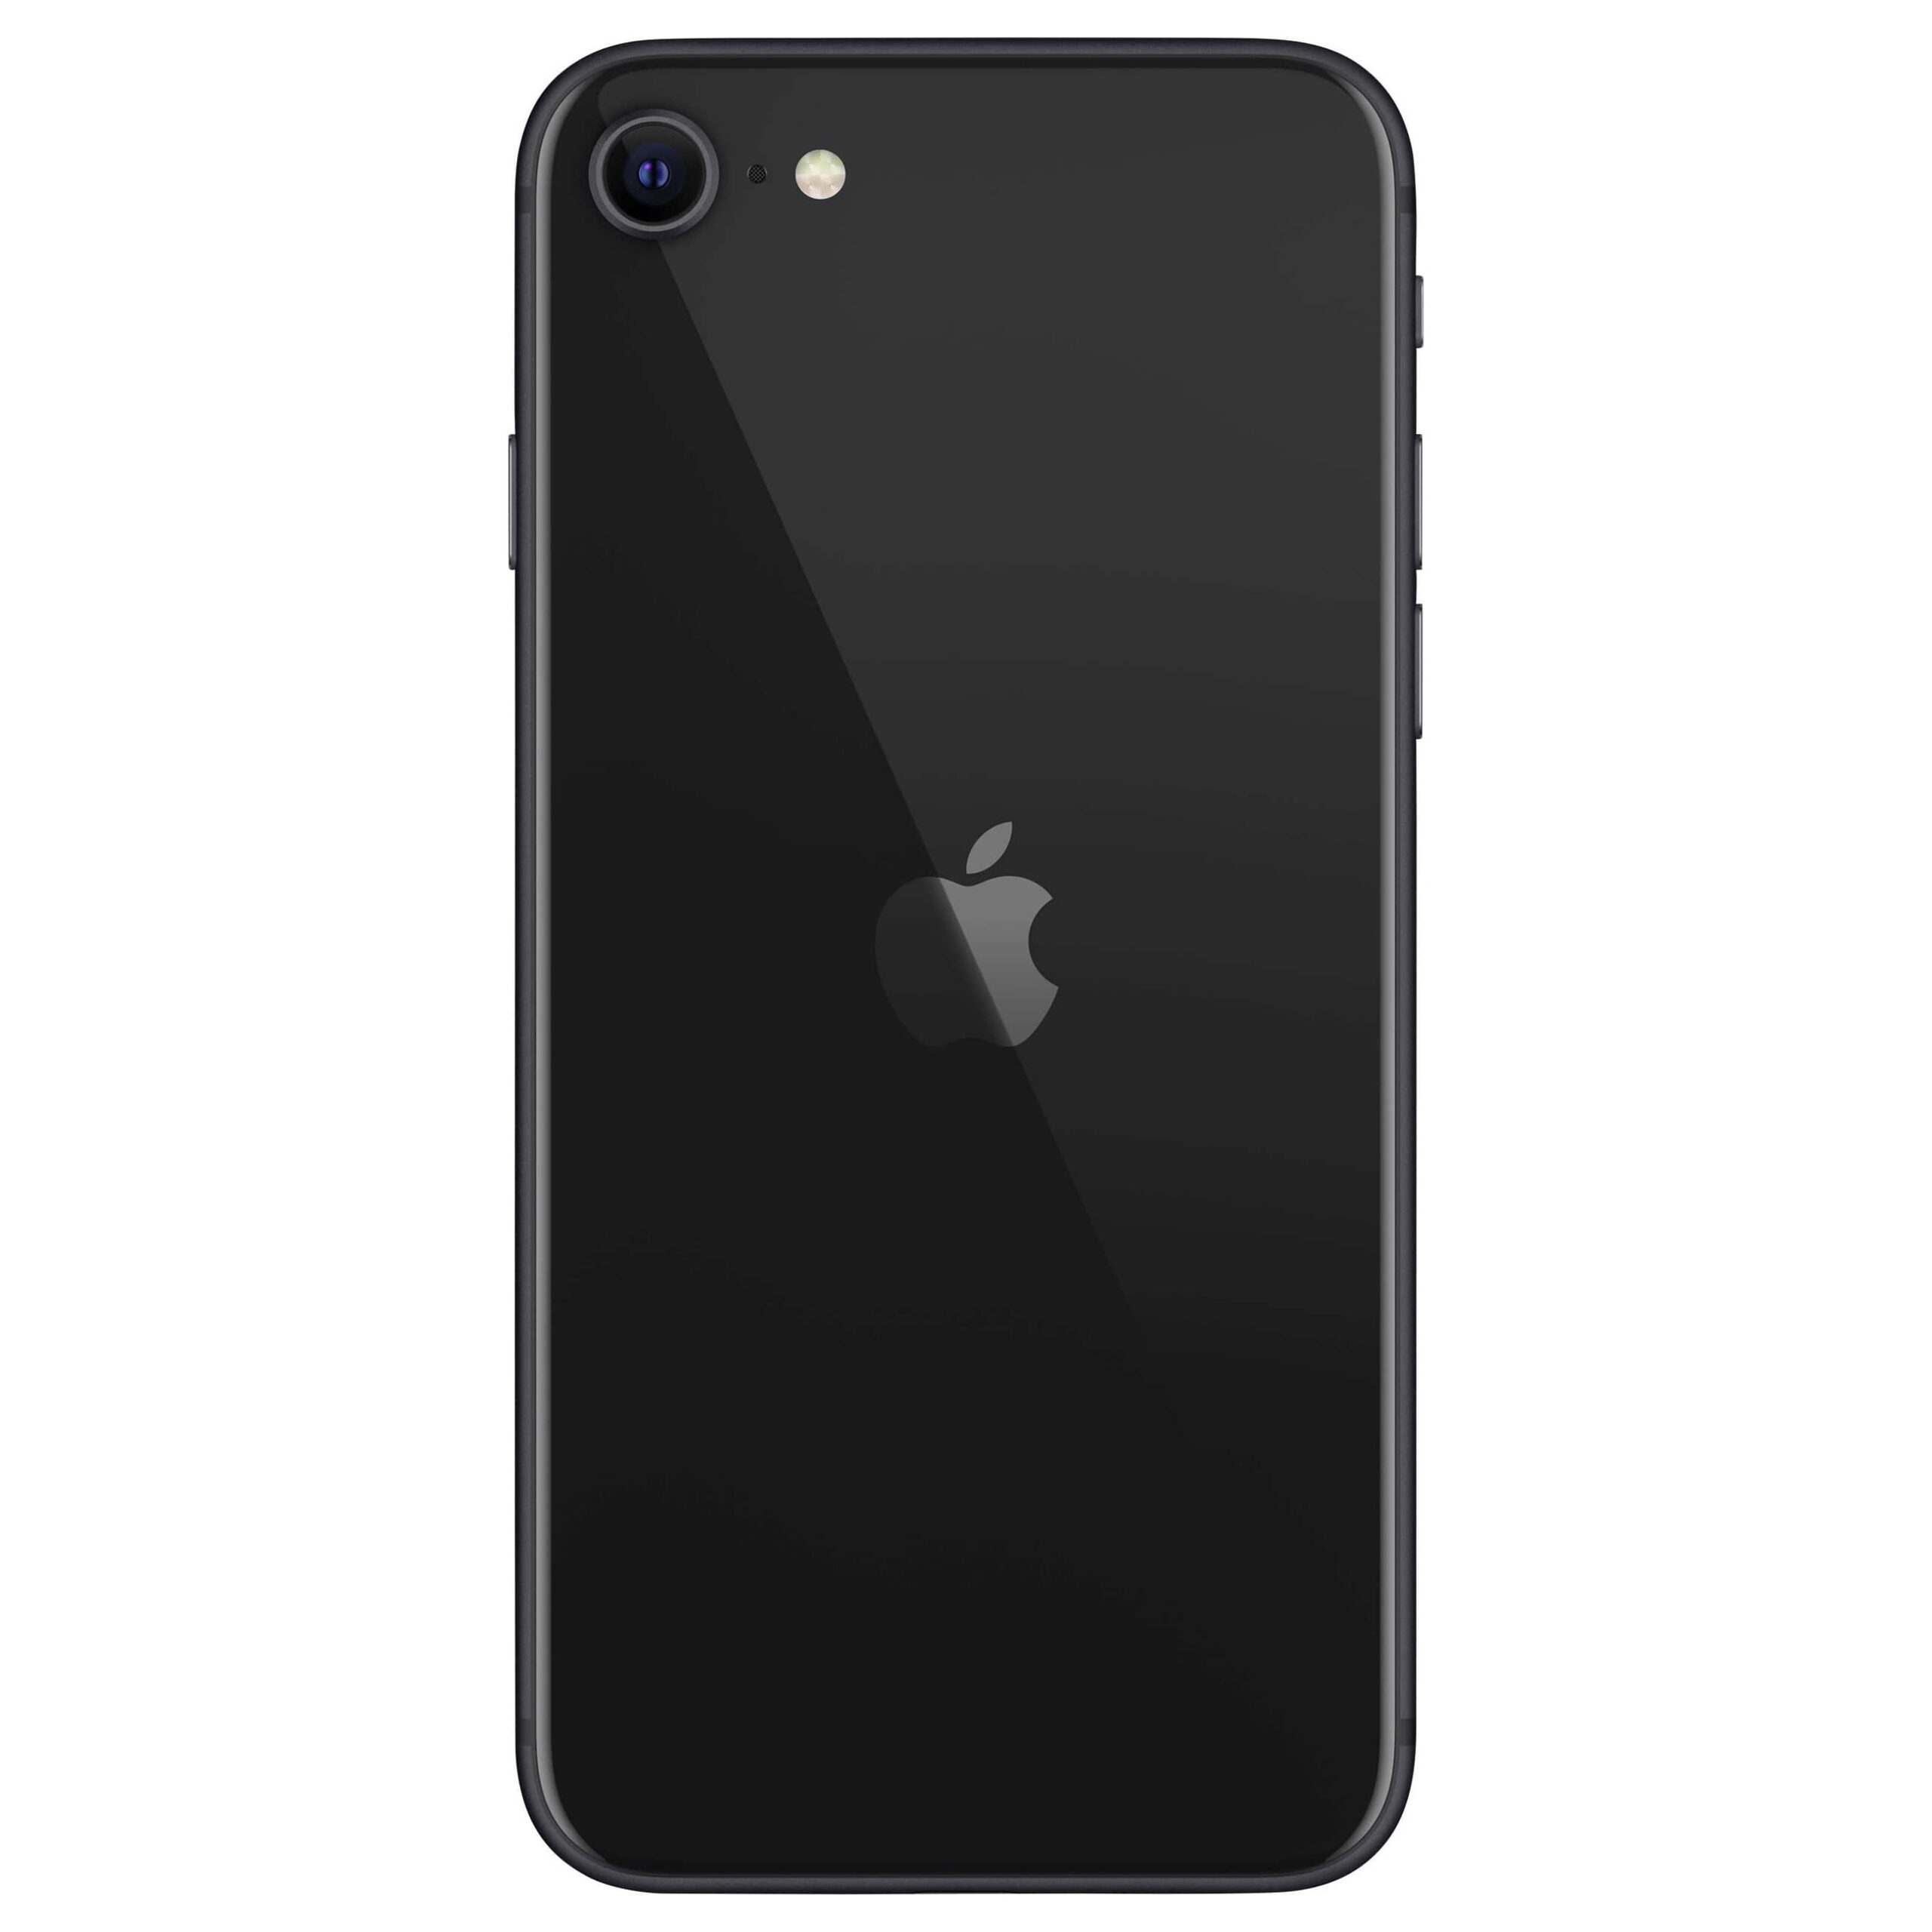 Apple iPhone SE (2020)Sehr gut – AfB-refurbished